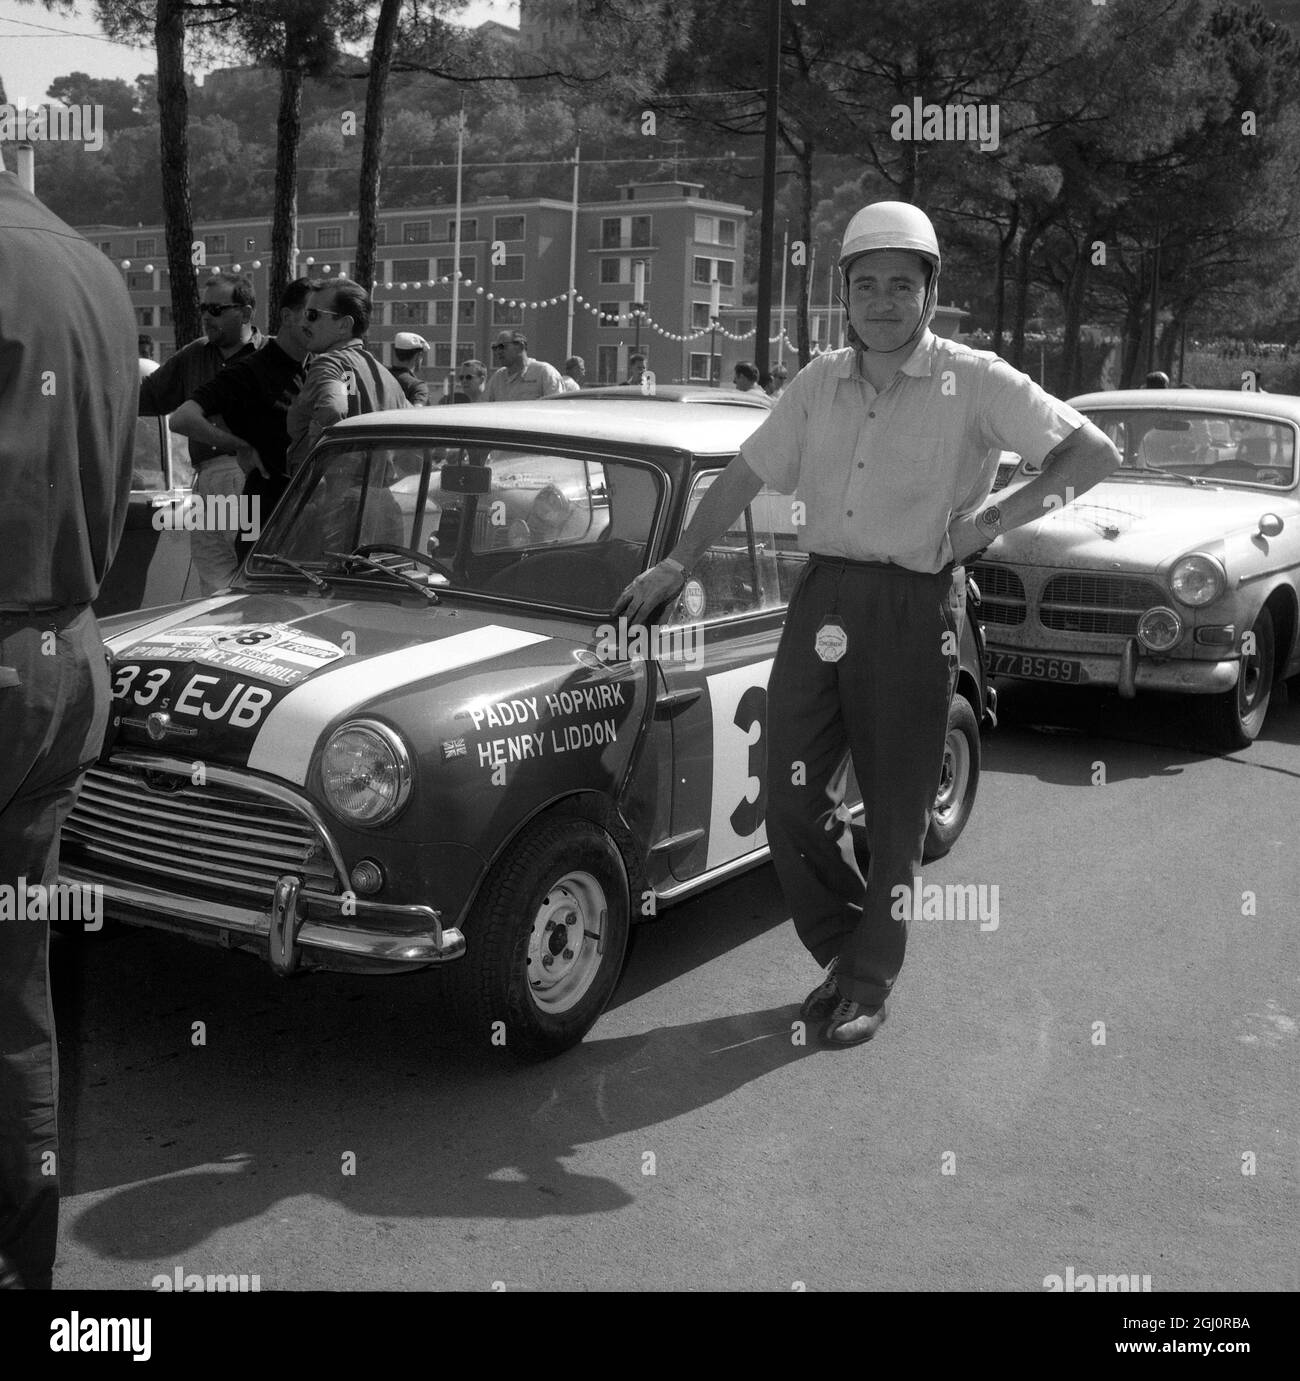 Paddy Hopkirk de Grande-Bretagne se tient à côté de son Morris Cooper après avoir été le premier dans les classements handicap de la course automobile Tour de france ici à Nice, France. Le Morris-Cooper a été codirigé par Henry Liddon le 24 septembre 1963 Banque D'Images